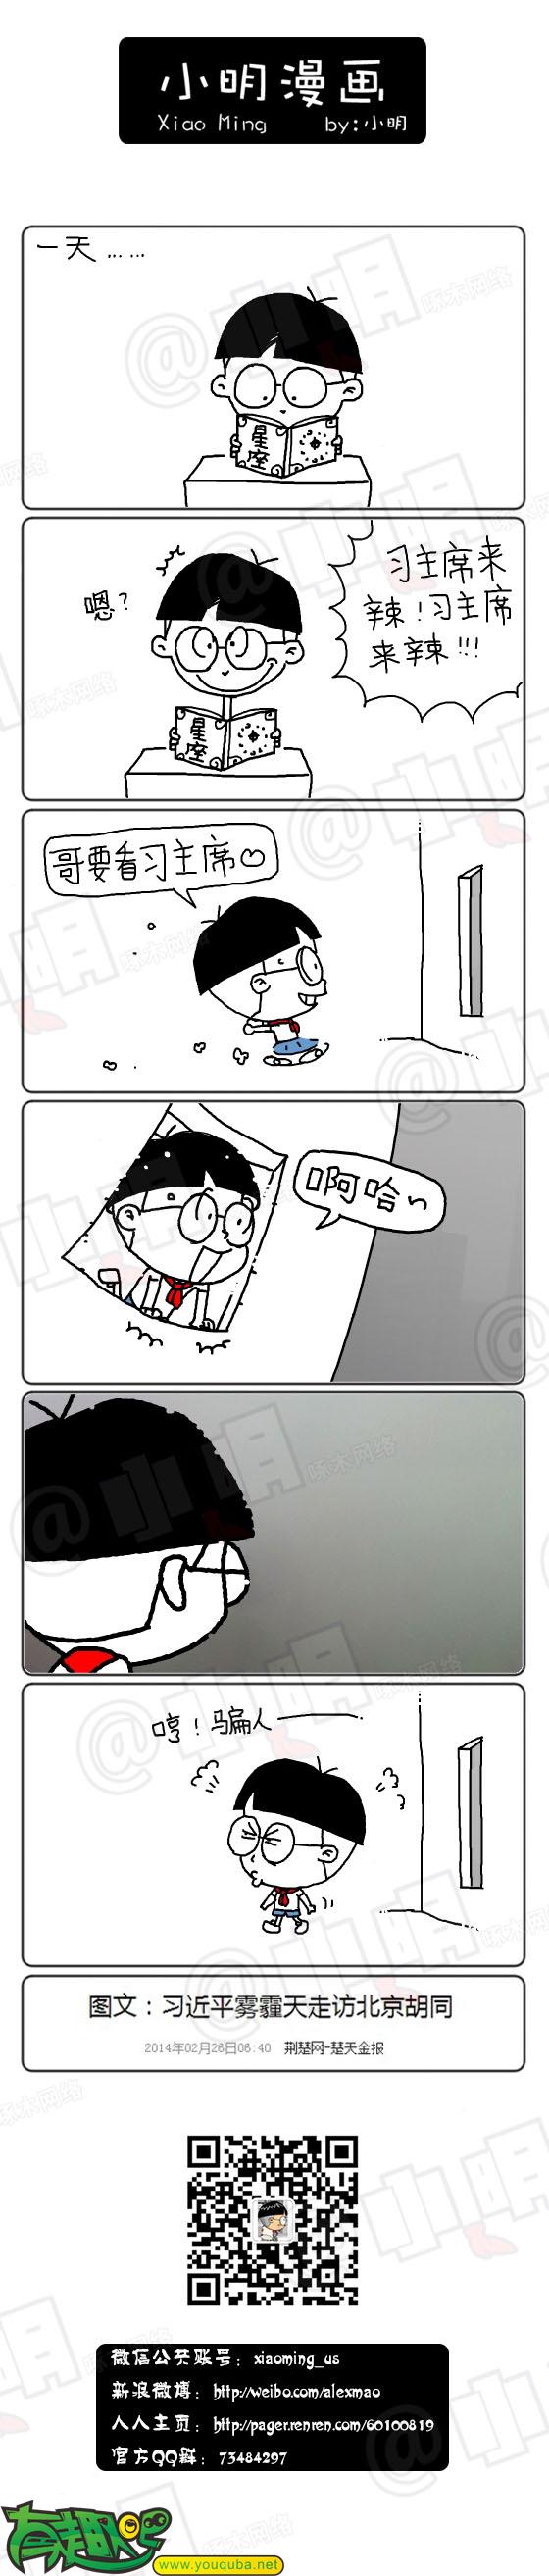 小明系列漫画:哥要看主席